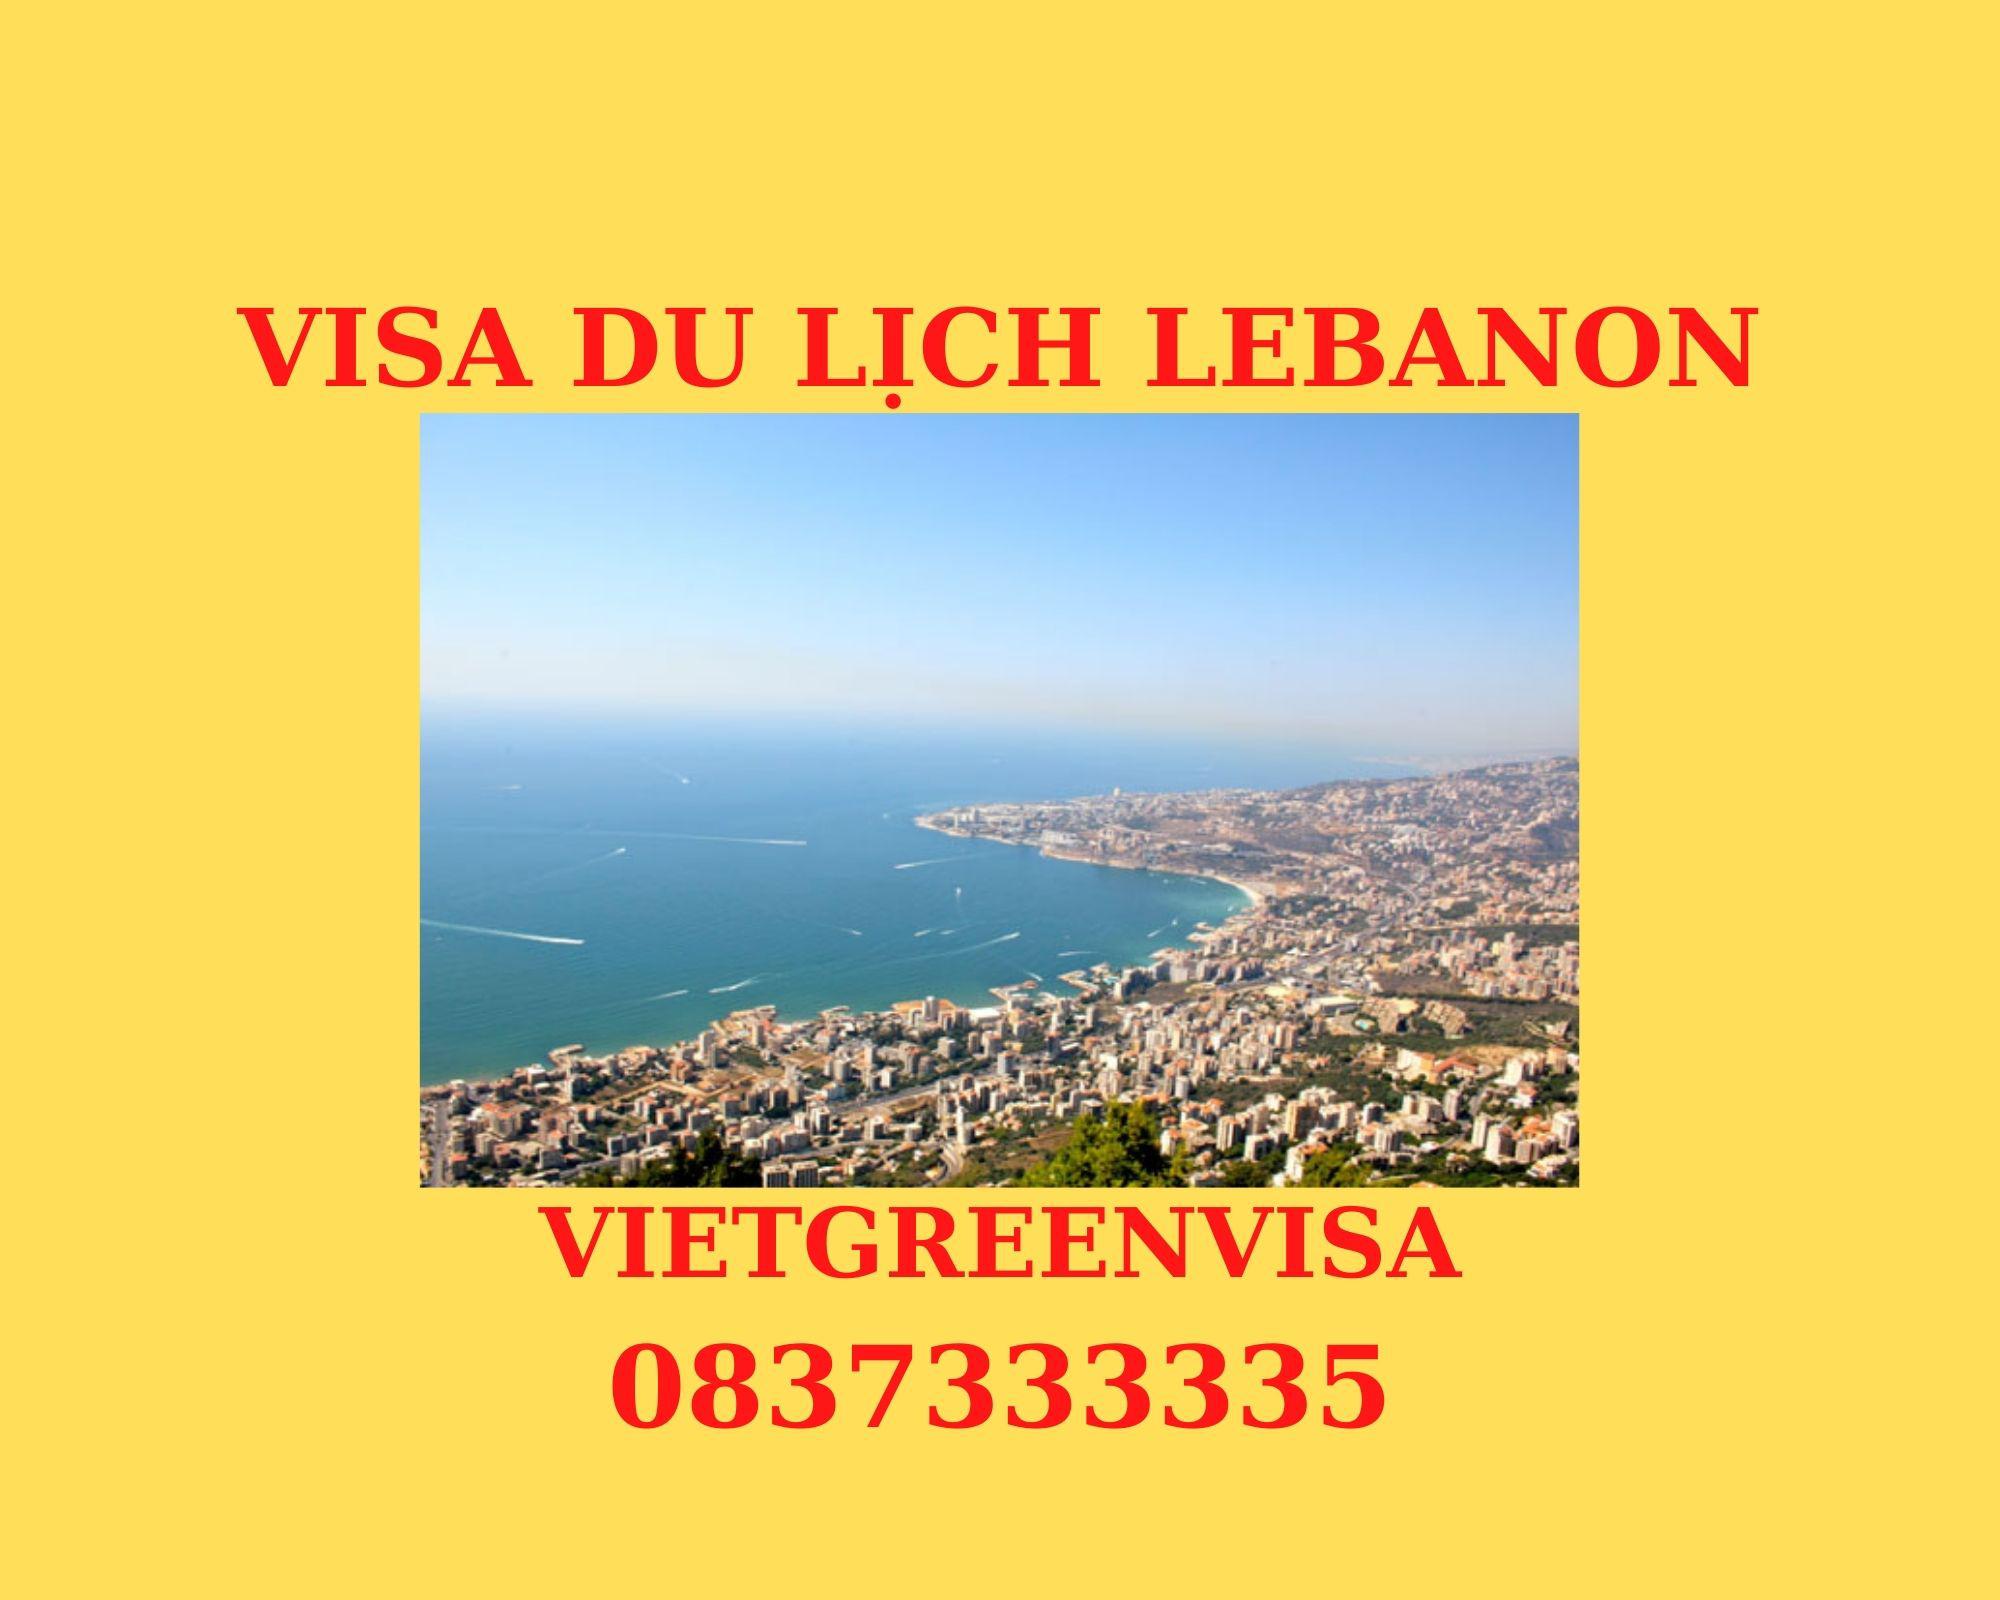 Dịch vụ làm visa du lịch Lebanon 14 ngày - bao đậu